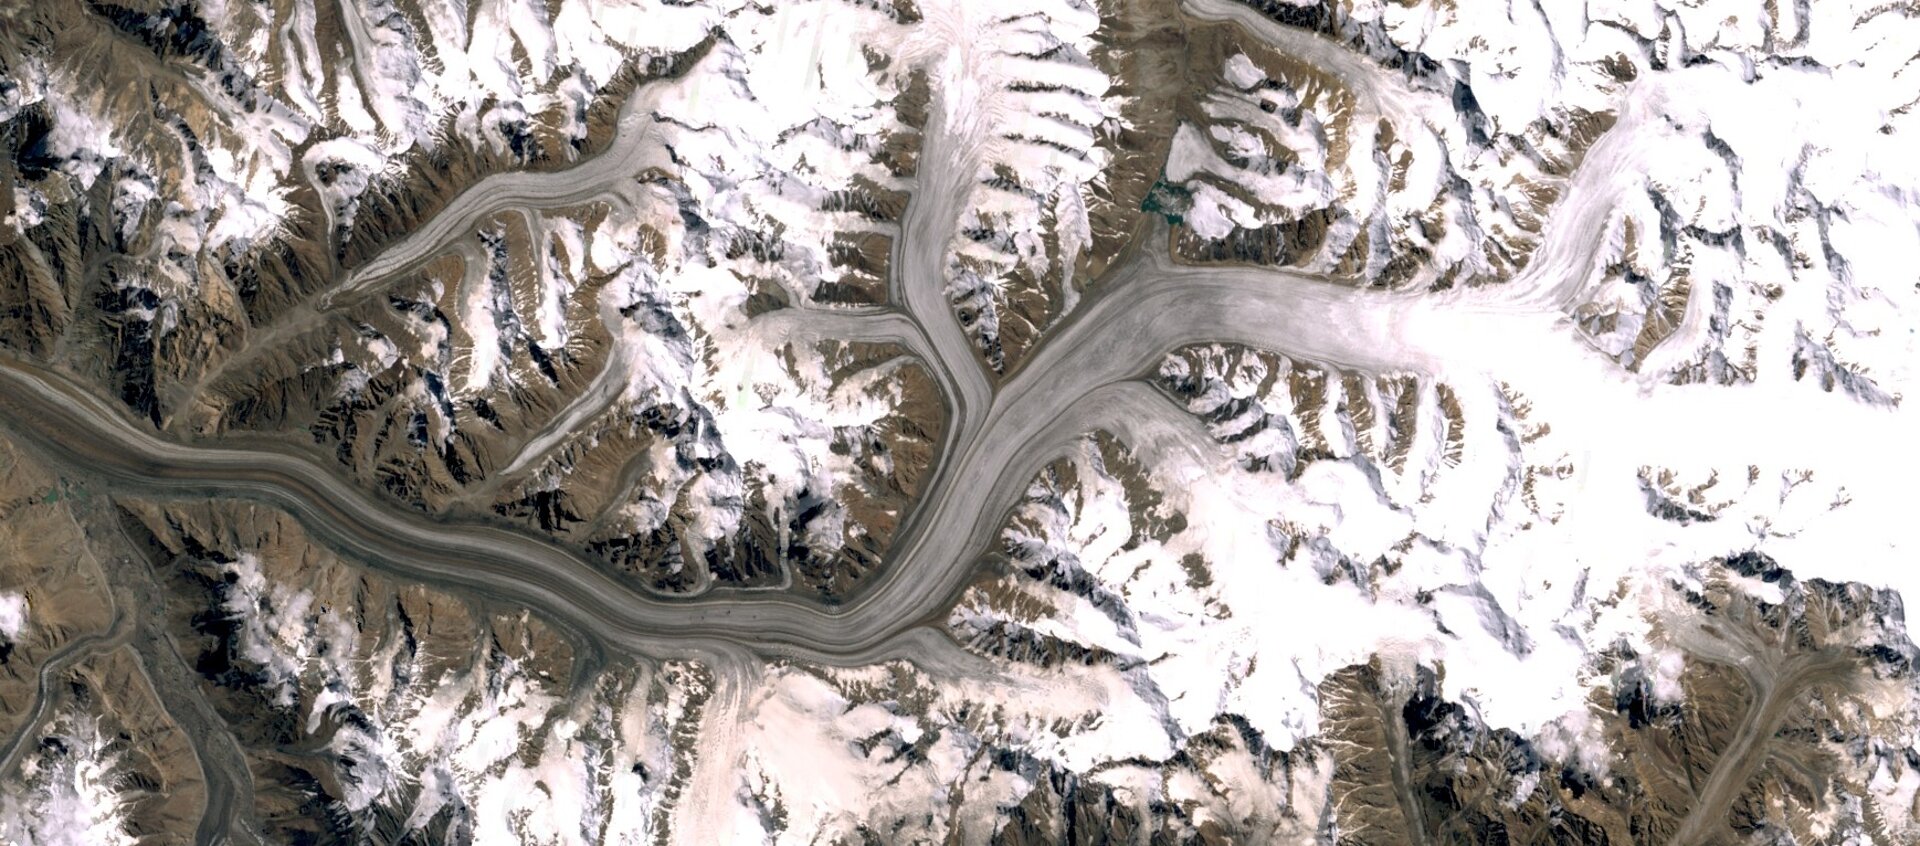 Na zdjęciu satelitarnym teren górzysty. Szczyty gór pokryte śniegiem. W dolinie po prawej stronie biały pas zmrożonego śniegu przechodzący w szary po lewej stronie zdjęcia. Z mniejszych dolin w kierunku głównego lodowca spływają mniejsze jęzory.